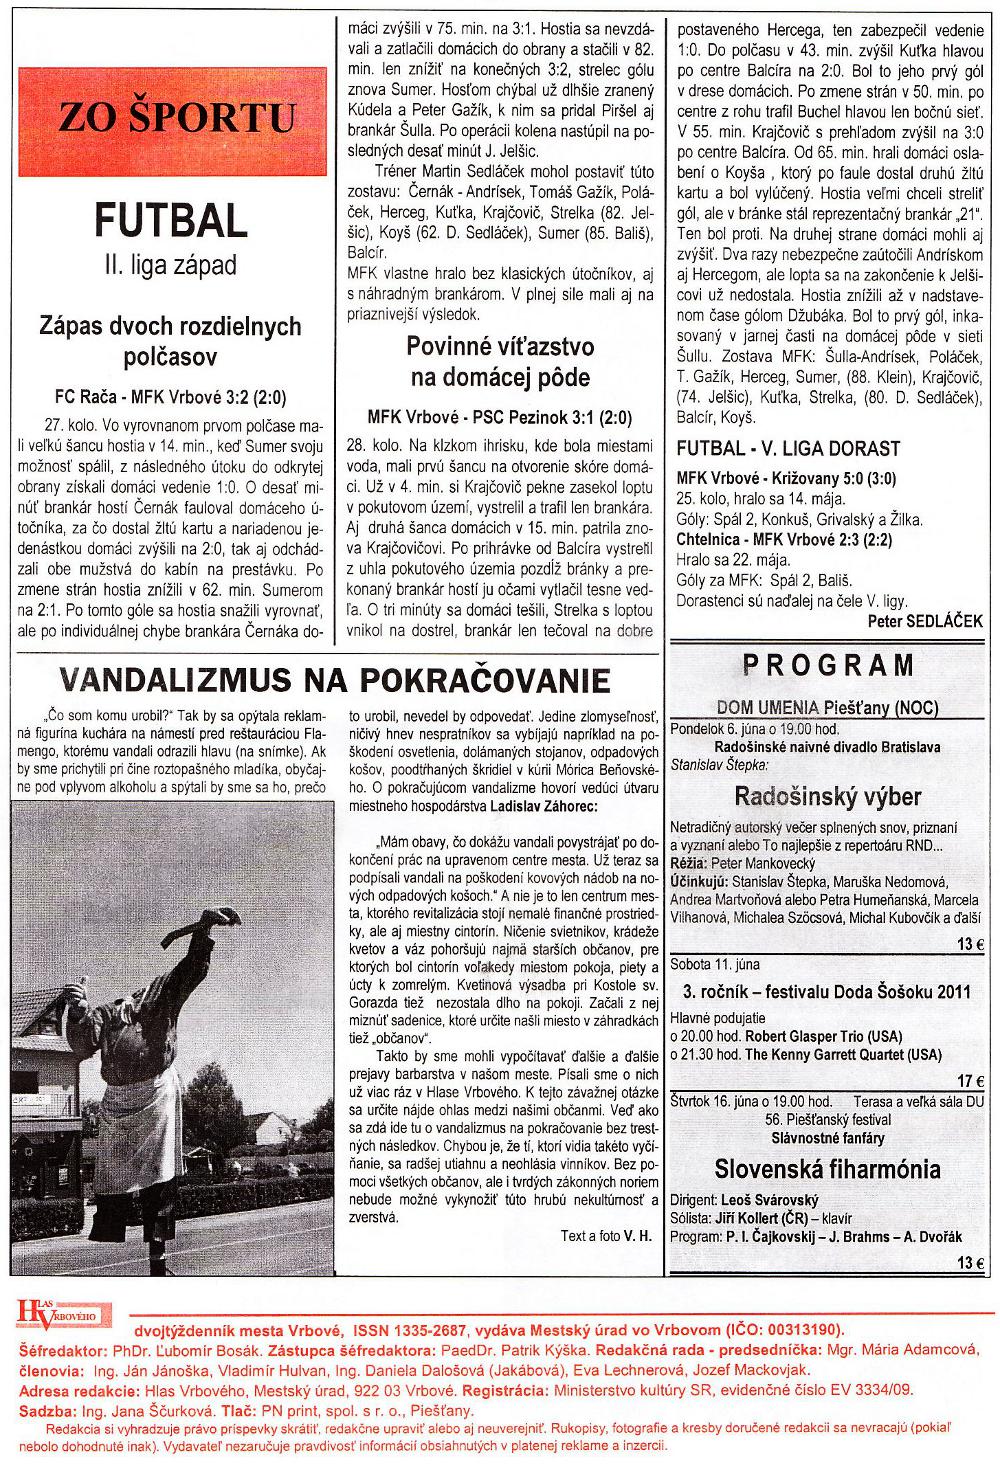 Hlas Vrbového 11/2011, strana 8